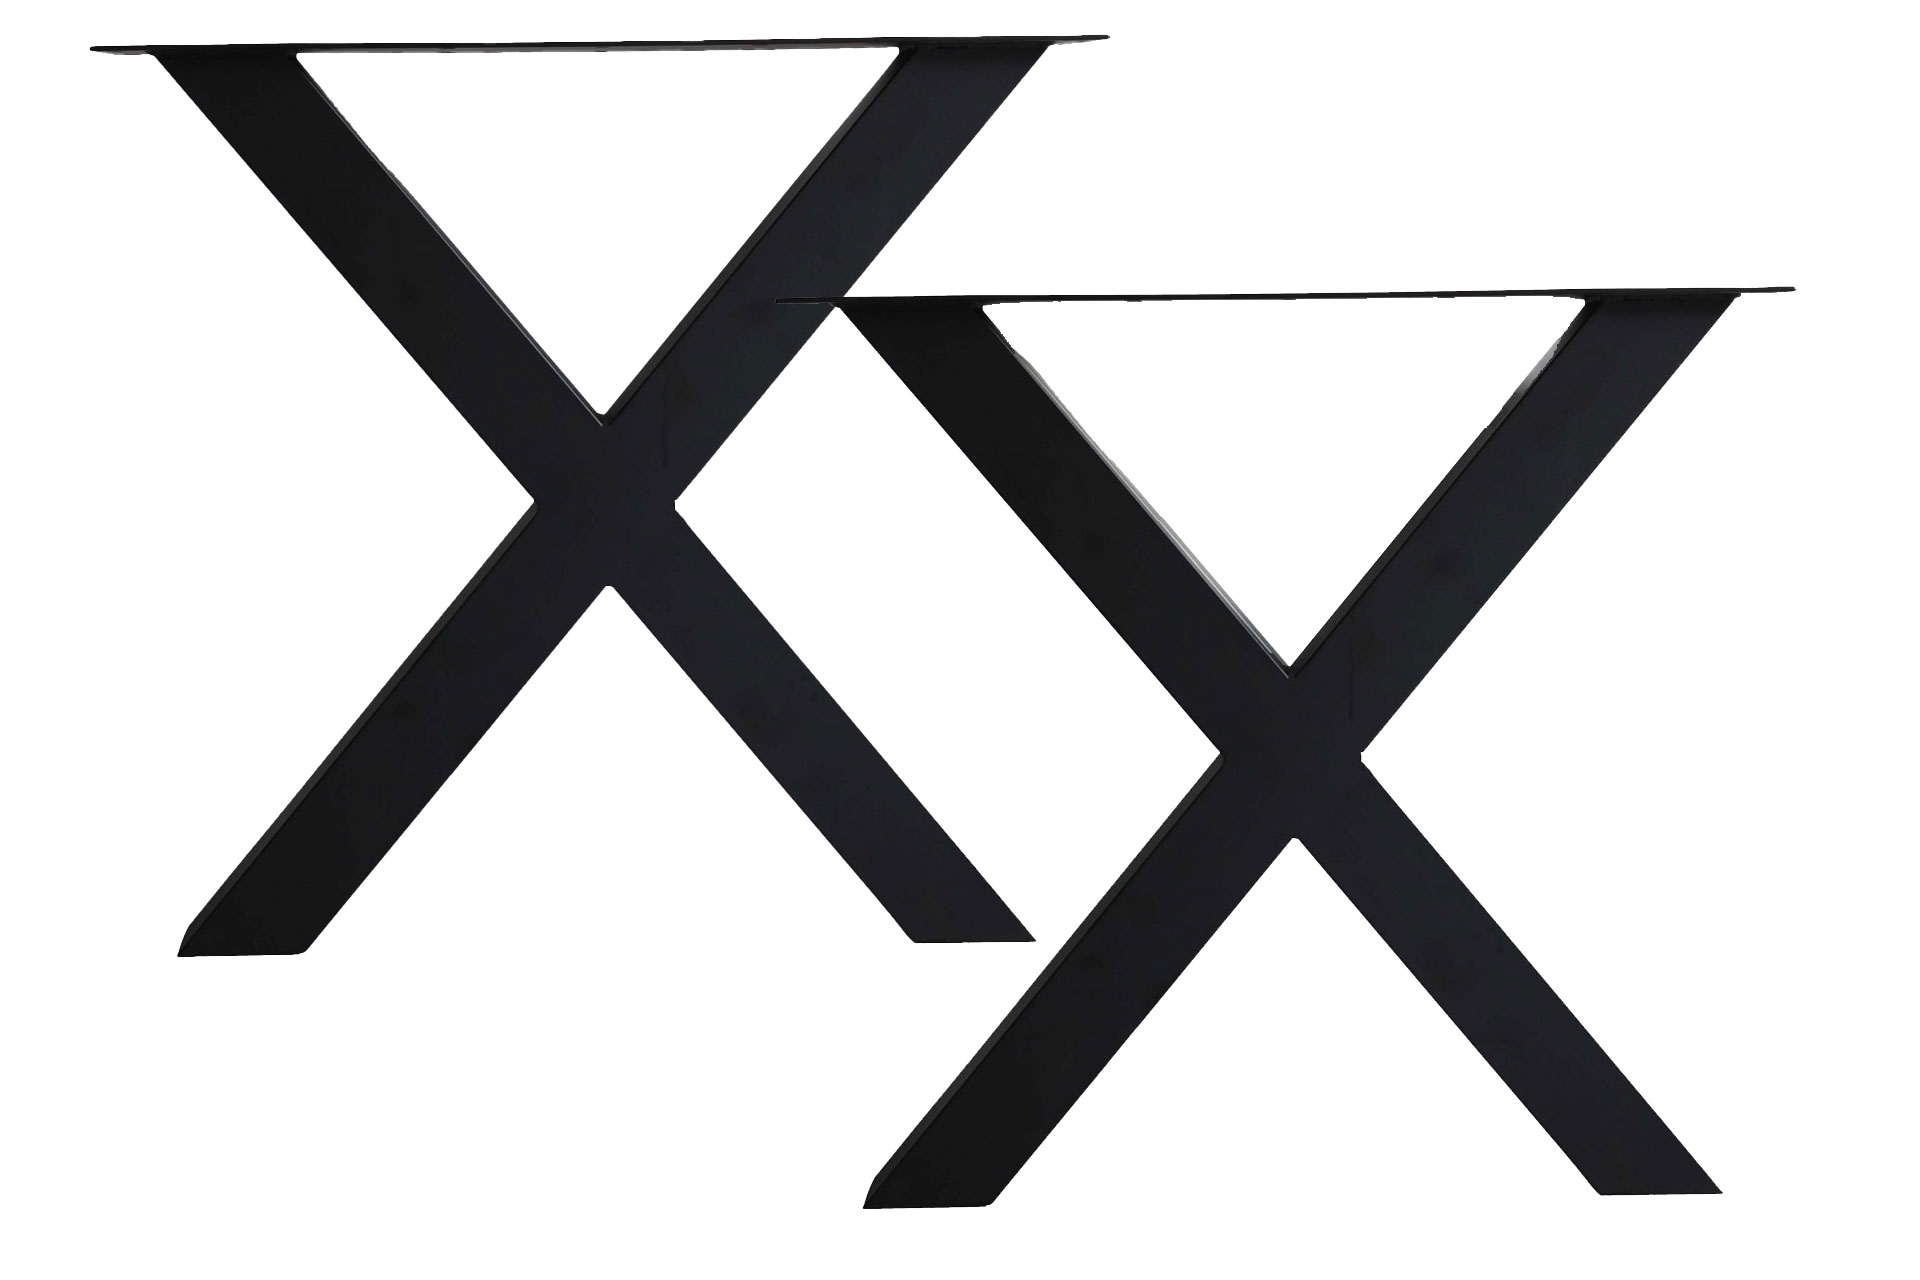 Hora X-Tischbeine 1 Paar (2 Stück) in schwarz pulverbeschichtet